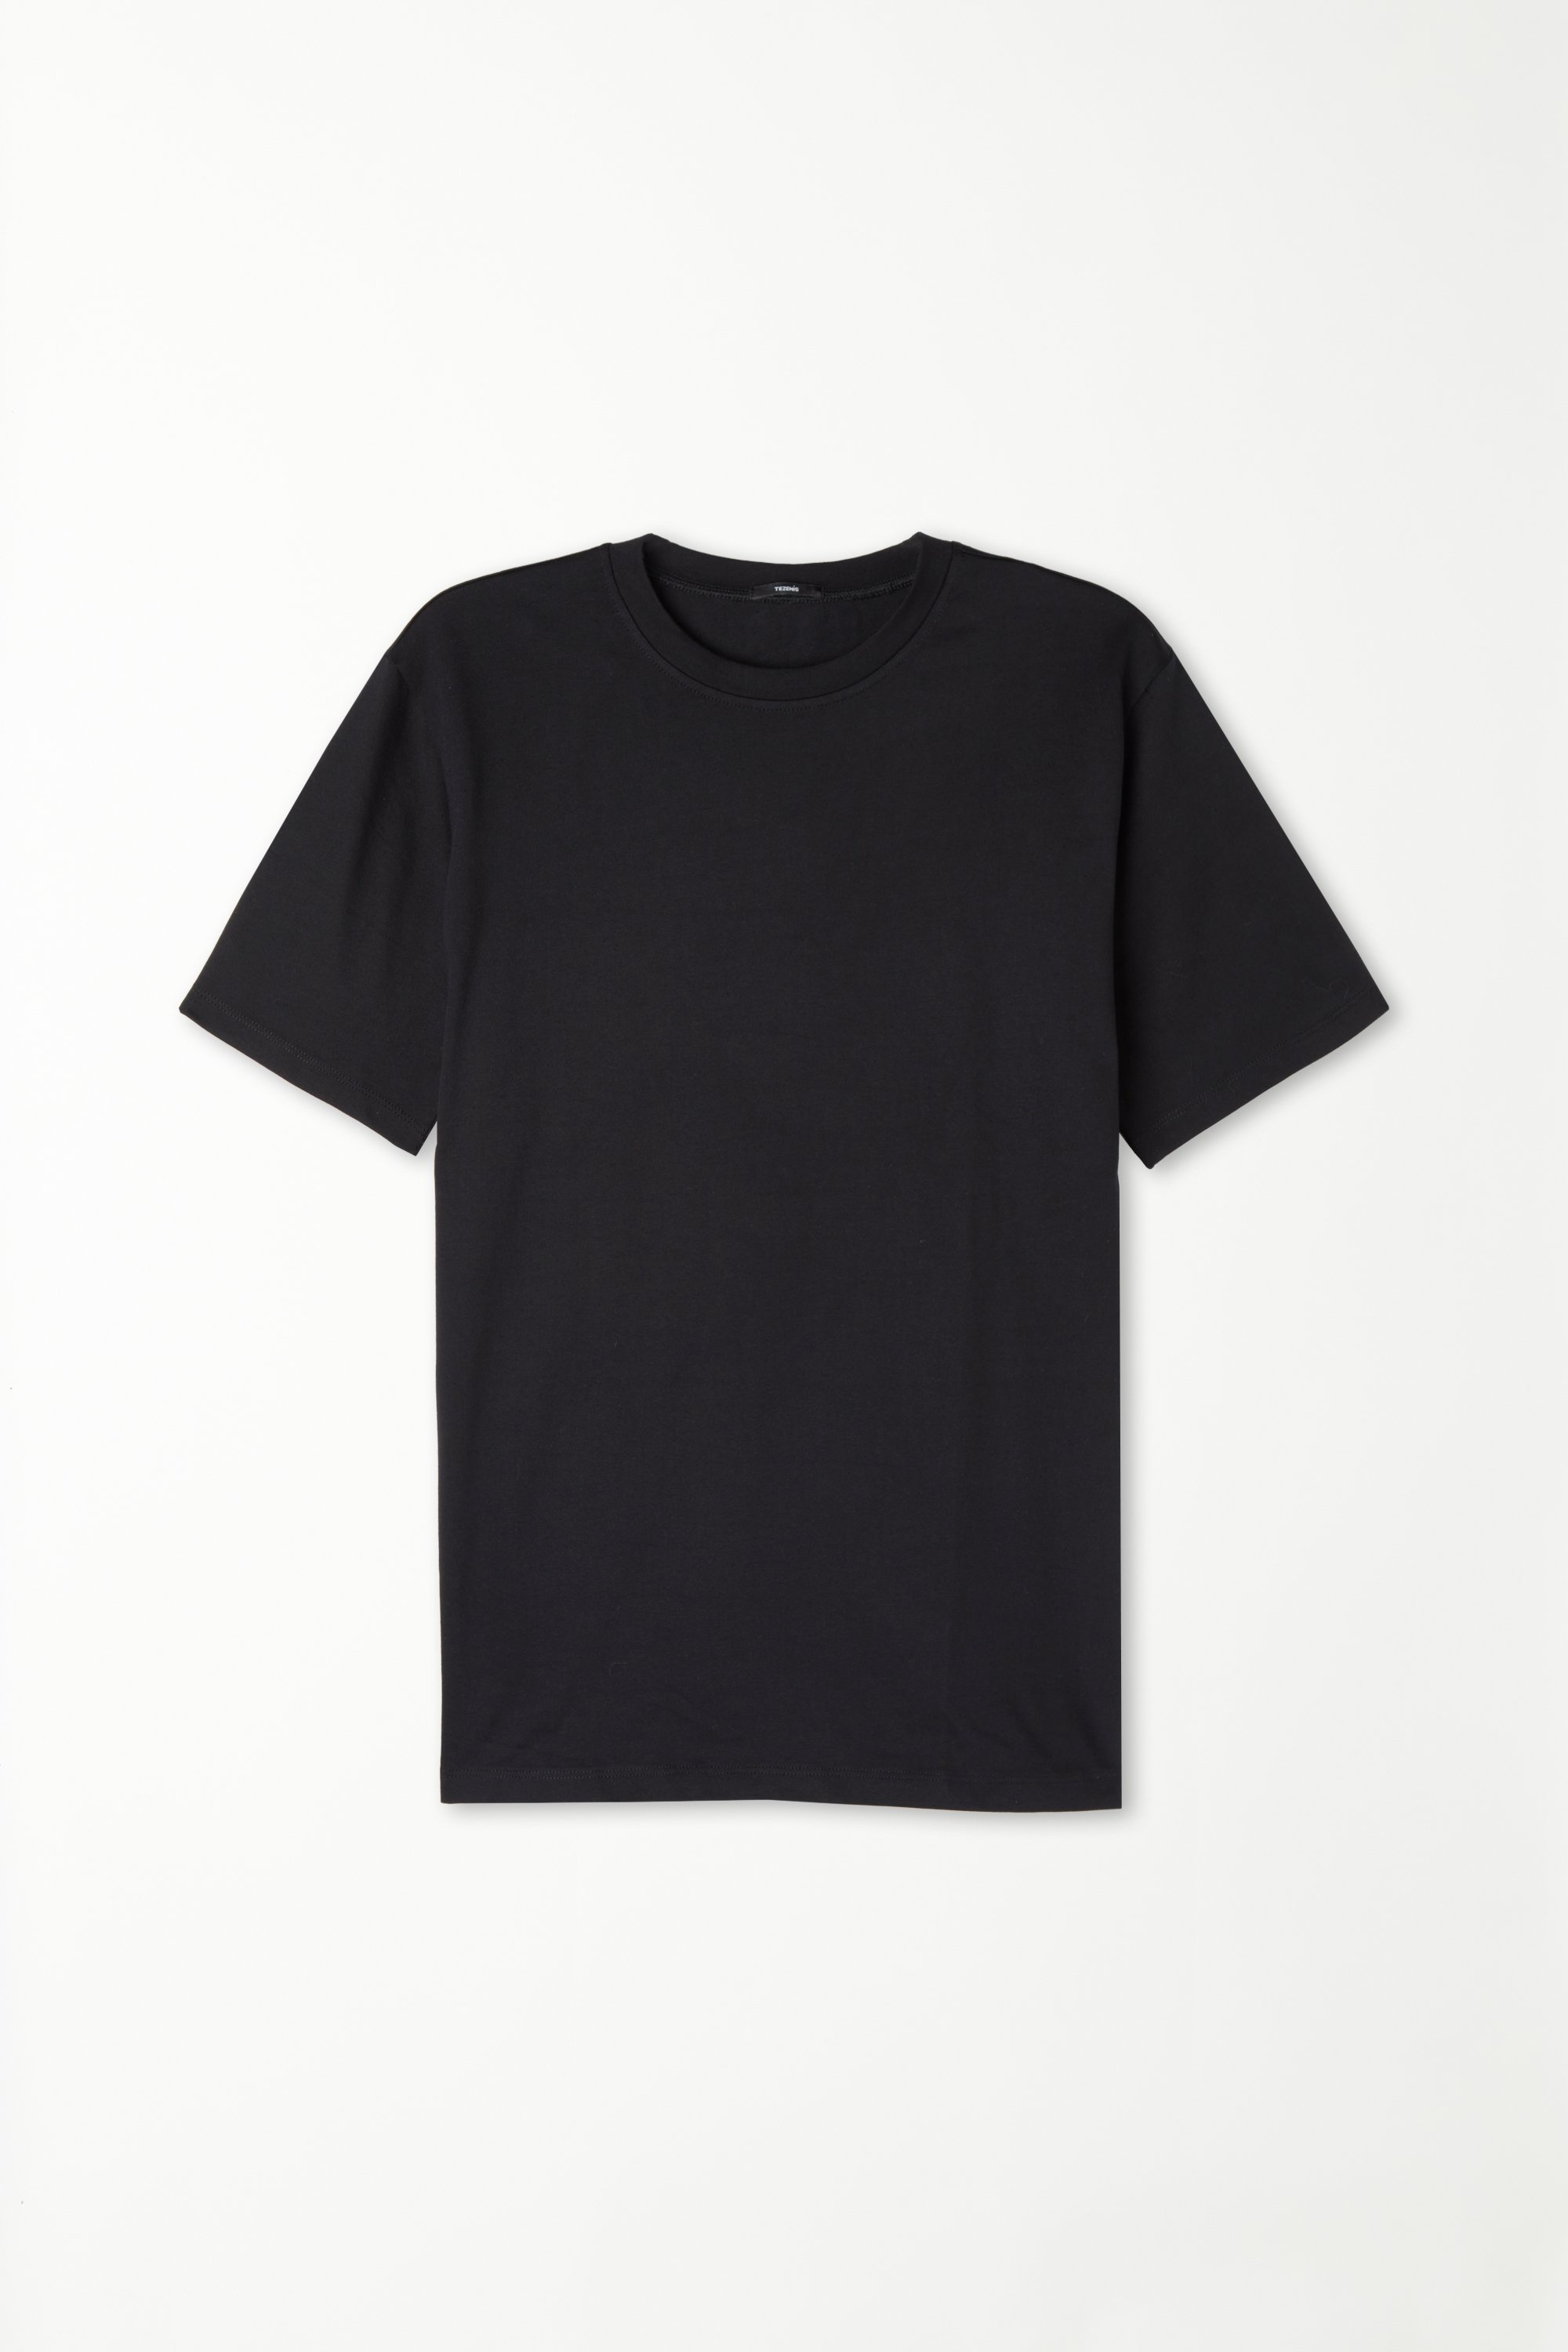 T-Shirt in 100% Cotone a Girocollo